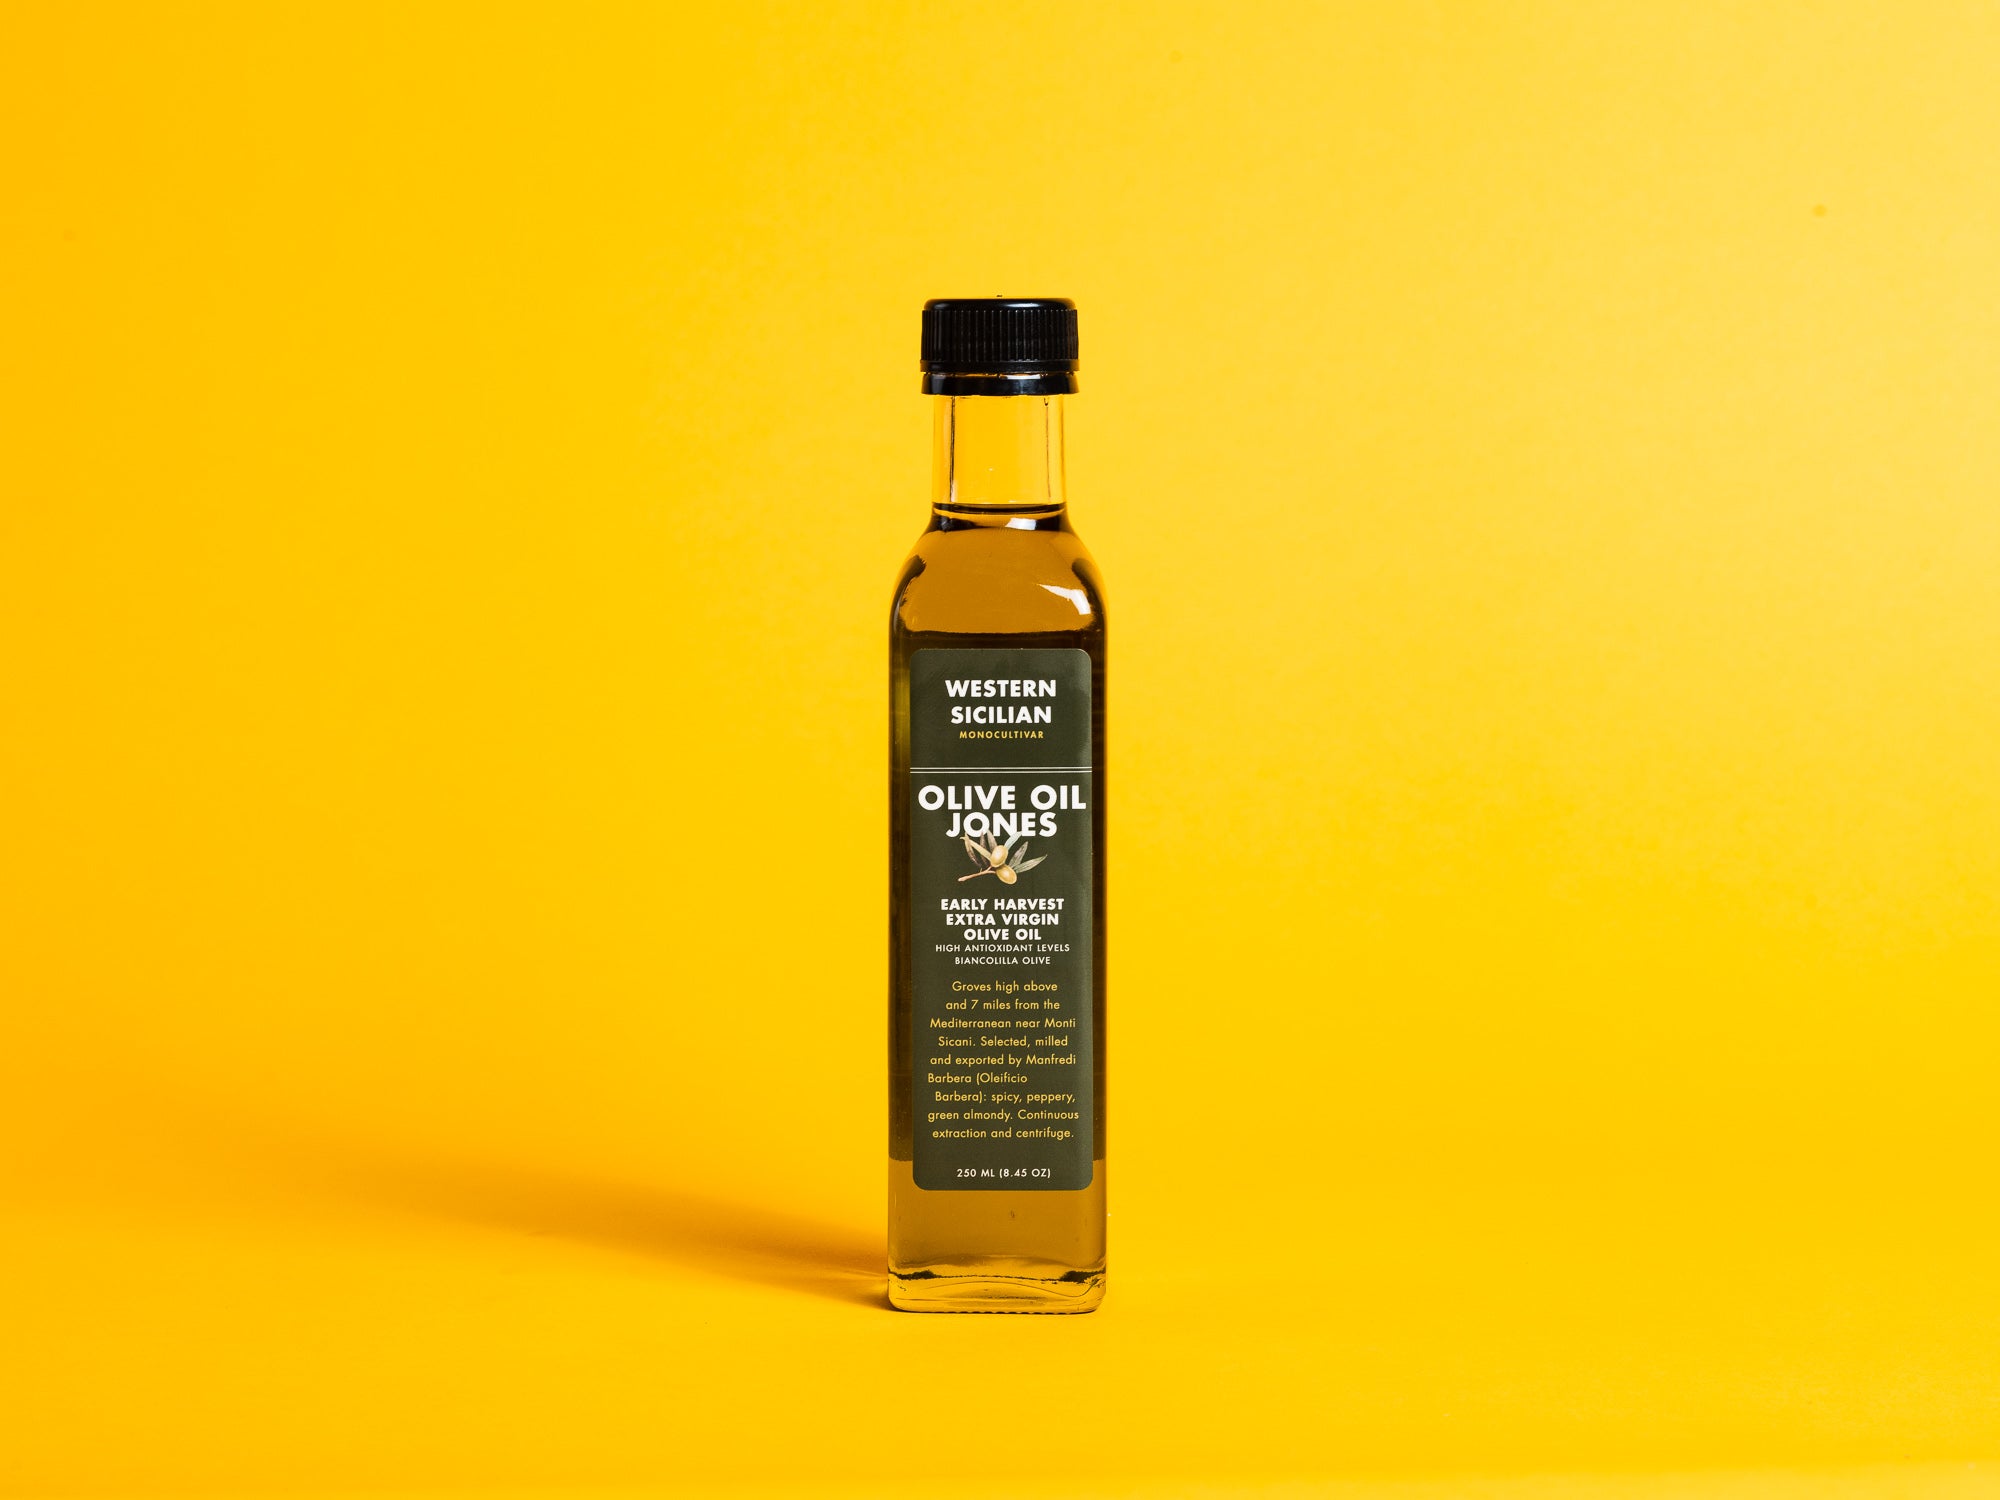 Portuguese olive oil